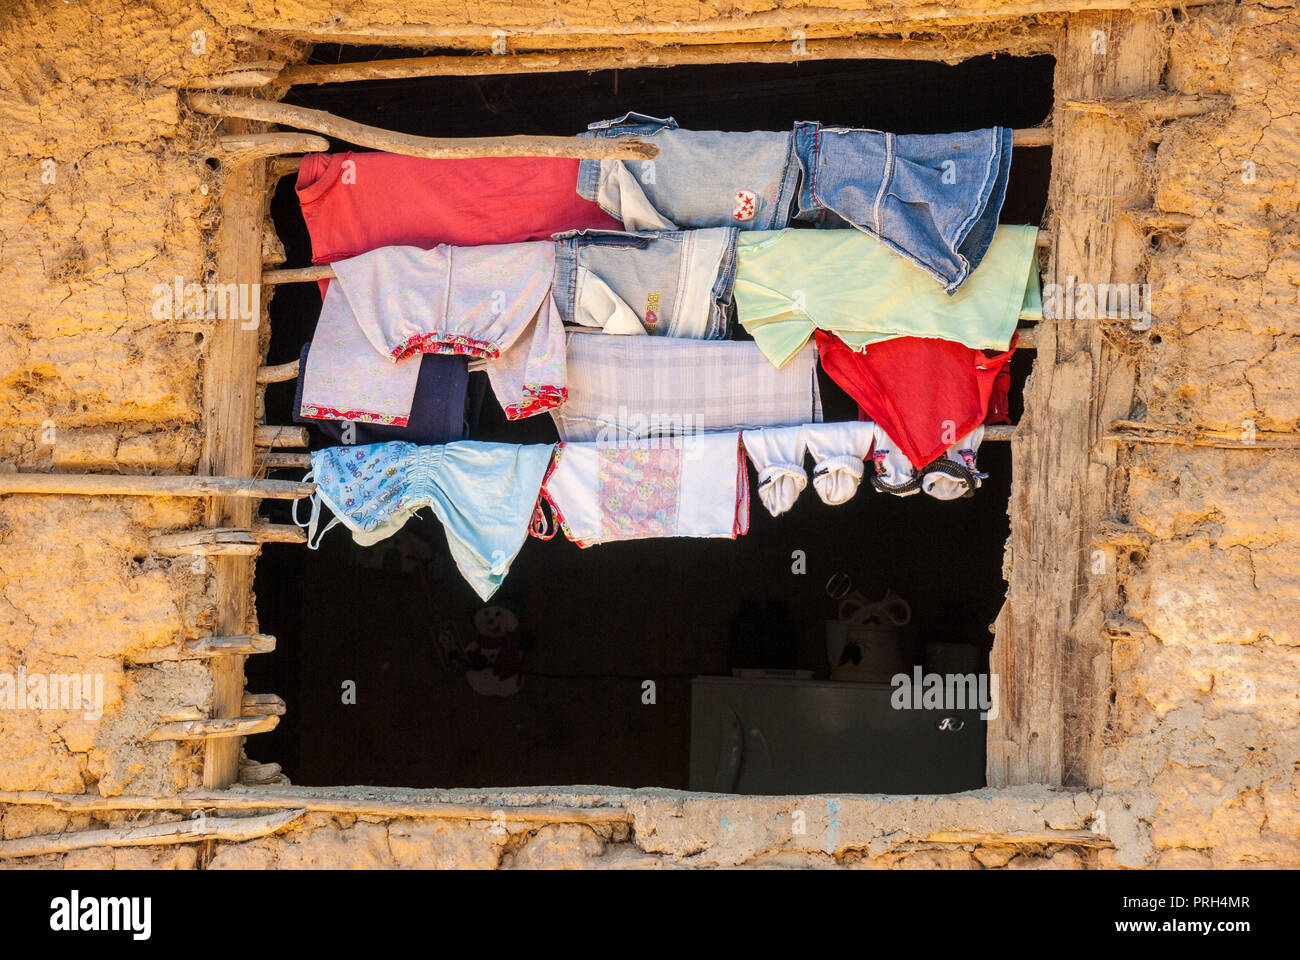 Vêtements séchant au soleil dans une maison de bahareque (maisons de bois ou de roseaux liés et les couvrir de boue). L'extrême pauvreté dans les zones rurales, avec Banque D'Images